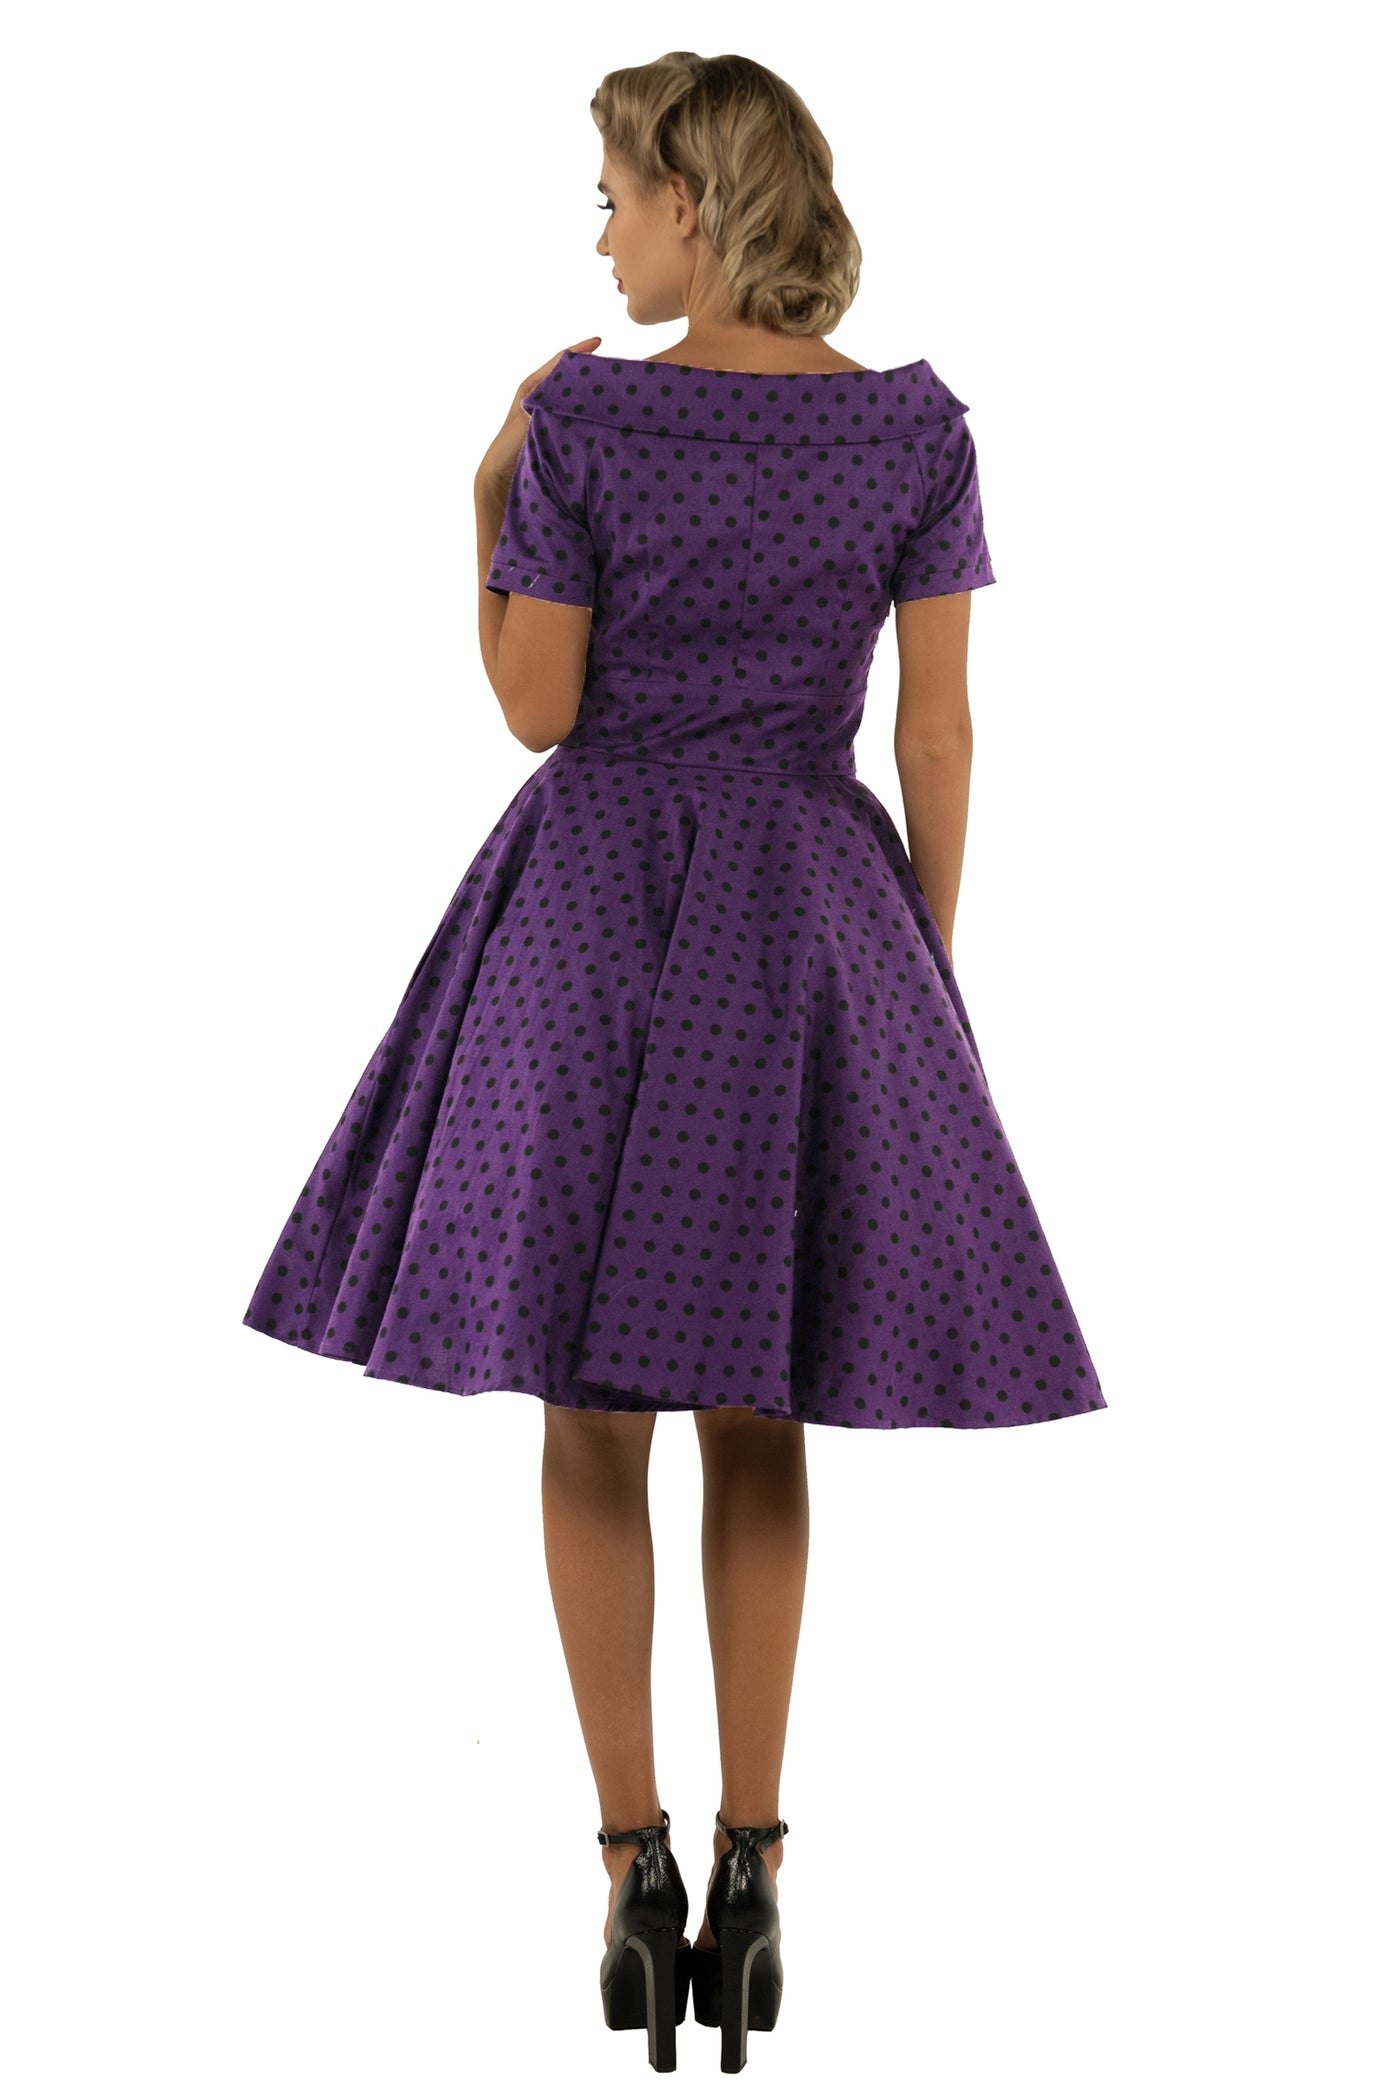 Darlene Retro Polka Dot Swing Dress in Purple